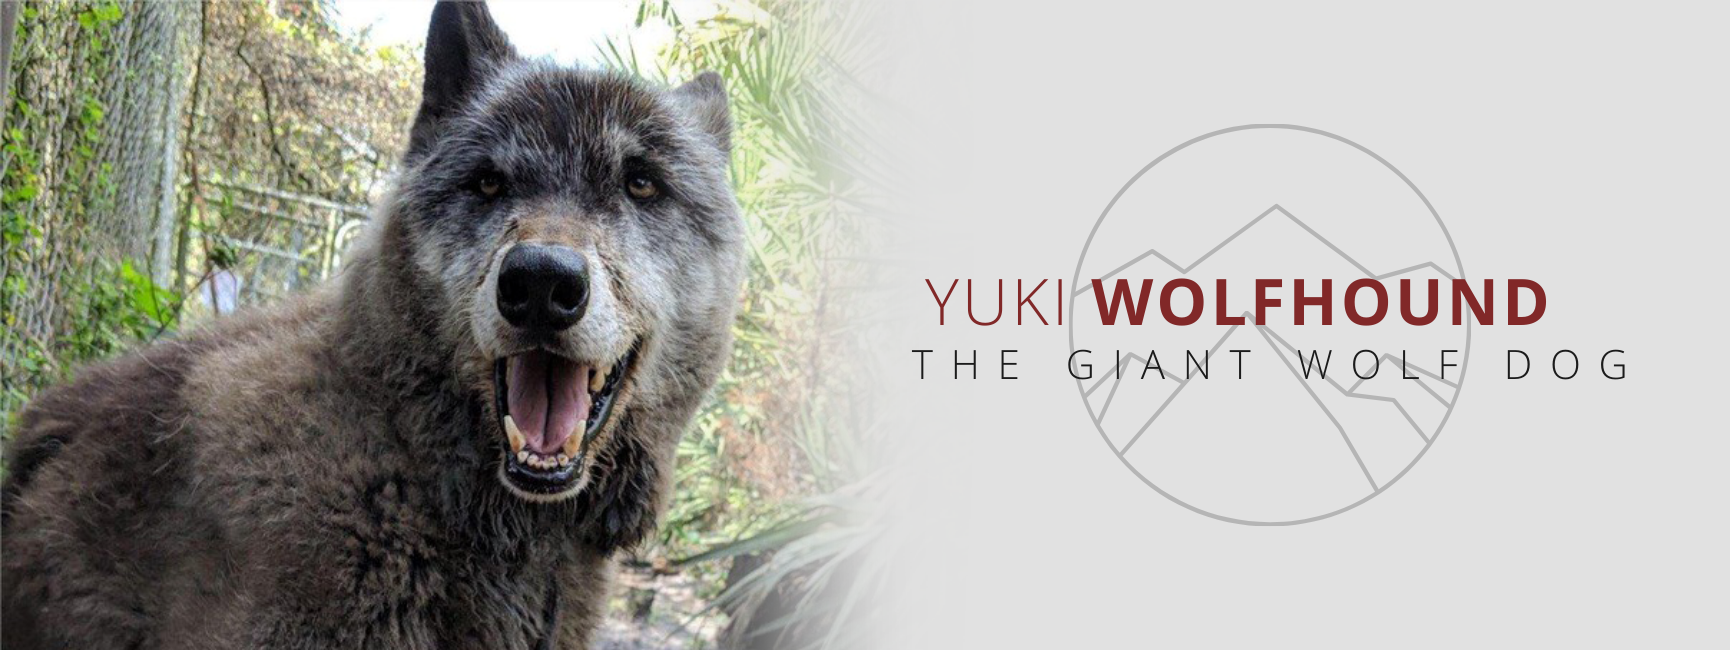 is yuki the wolf dog still alive